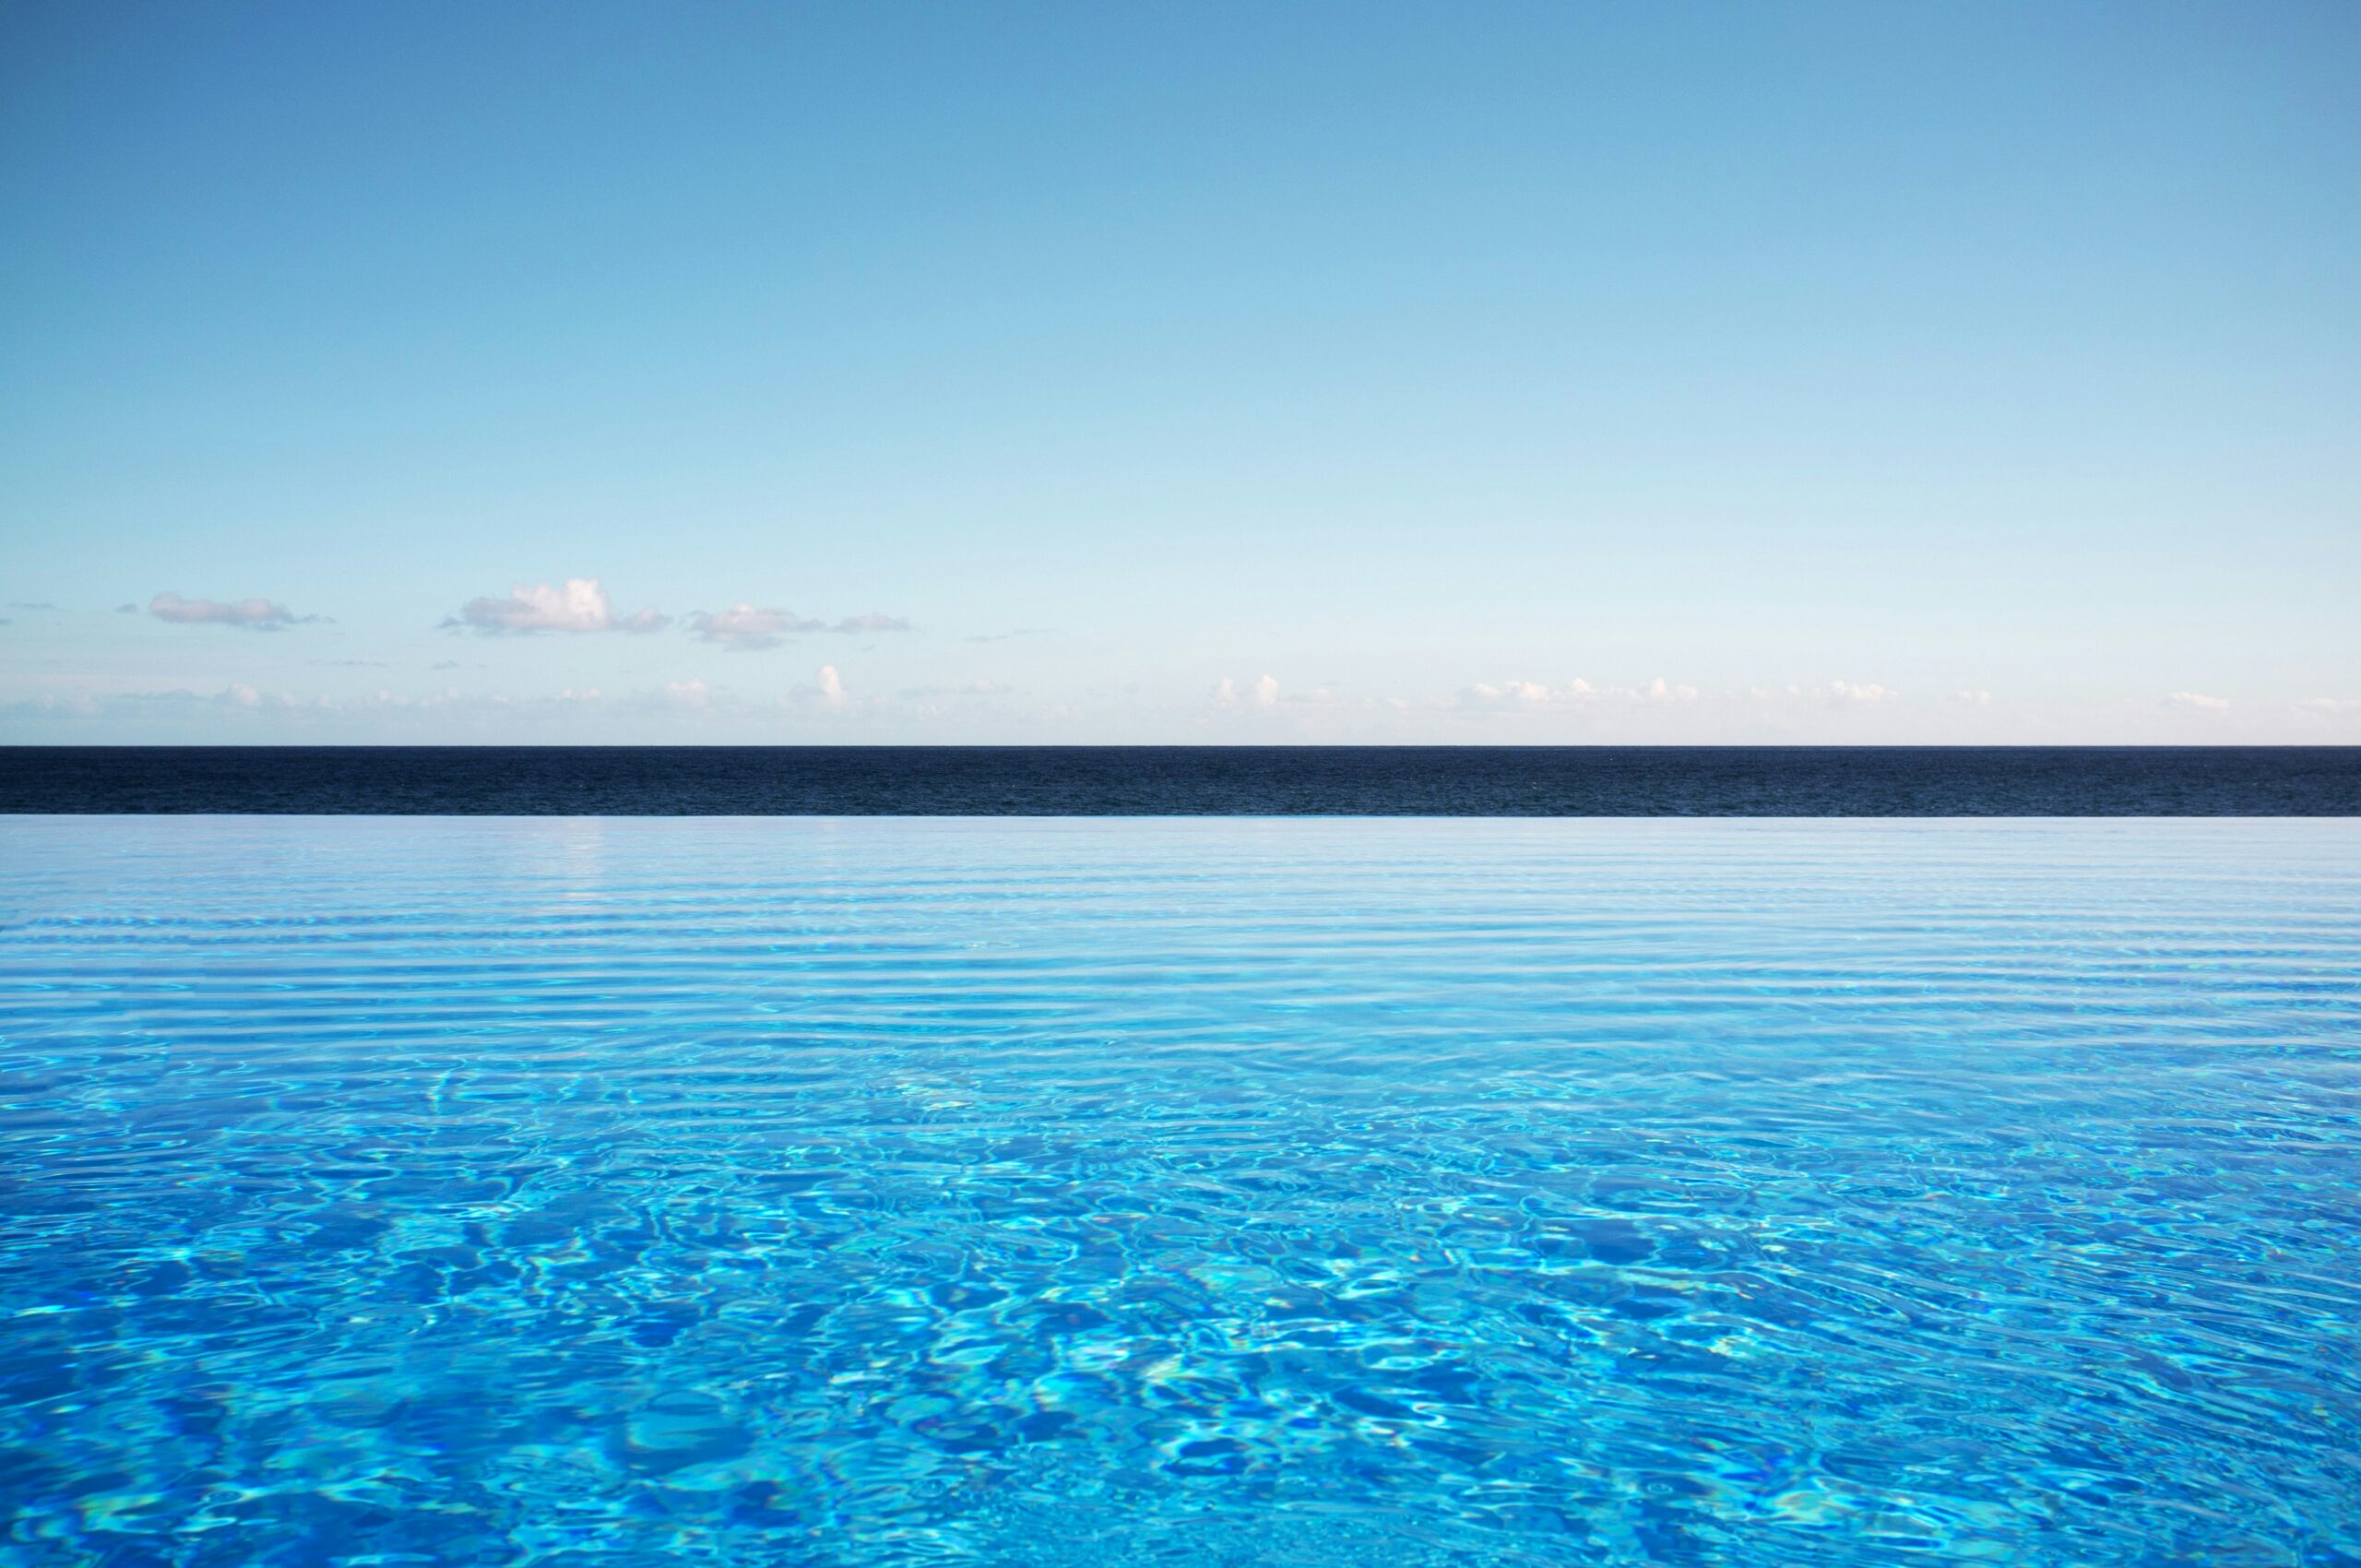 découvrez notre incroyable piscine à débordement, offrant une vue infinie sur un paysage à couper le souffle. ajustez votre niveau de relaxation et plongez dans le luxe avec notre infinity pool.